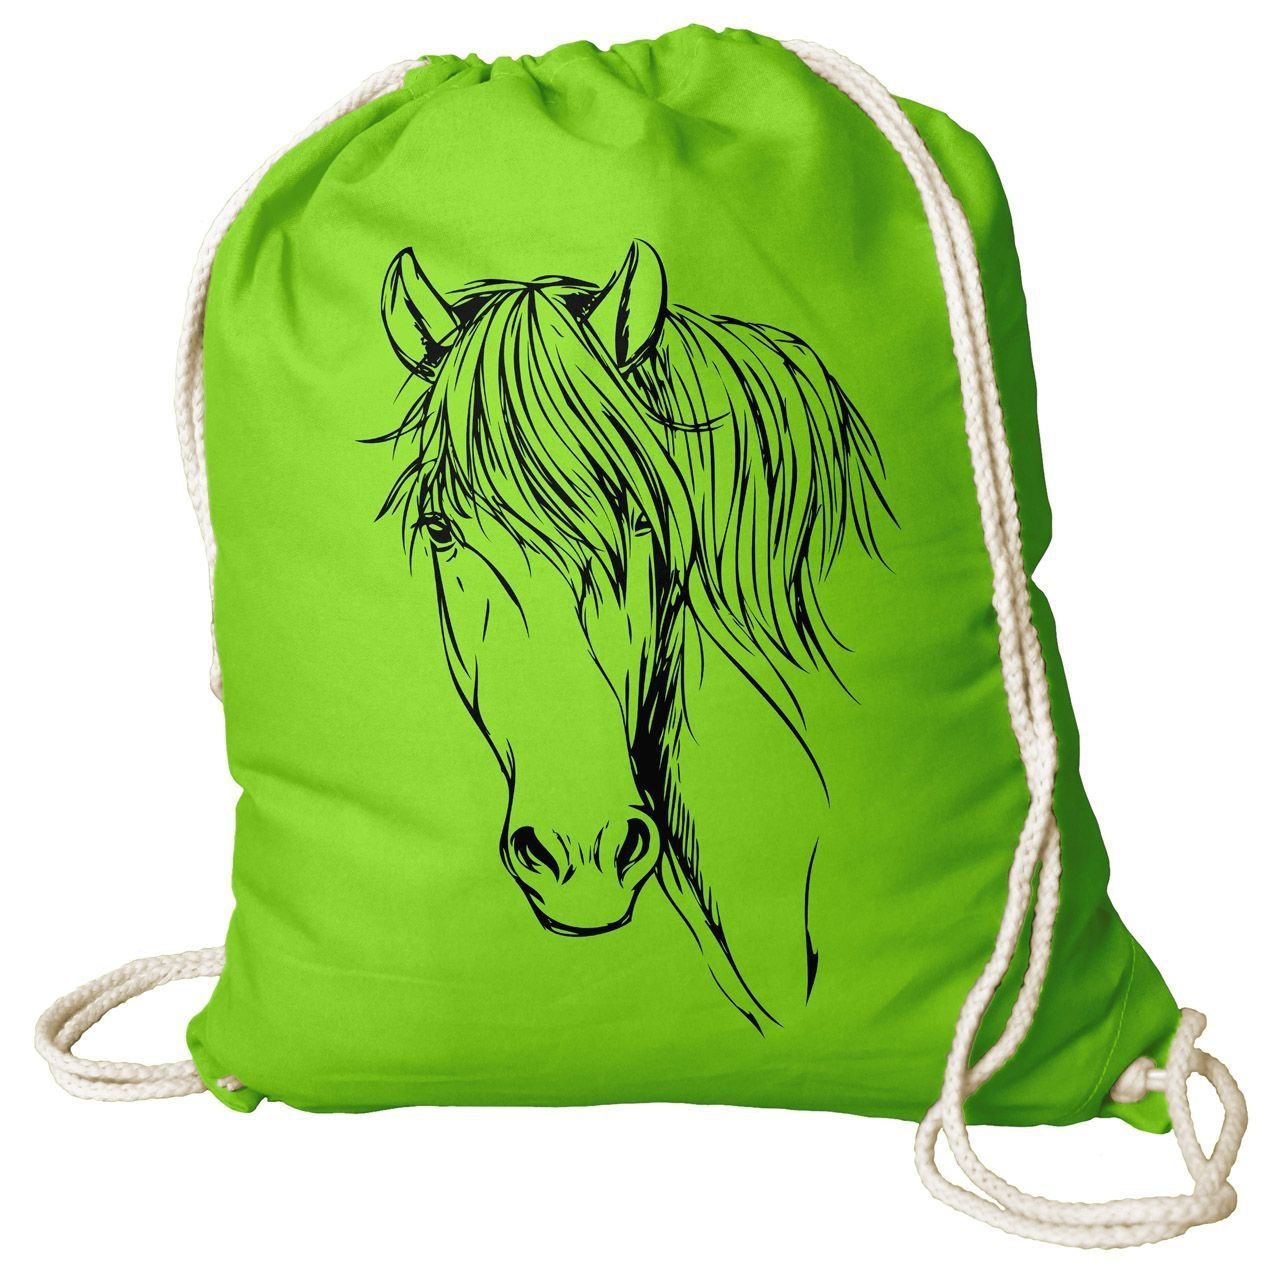 Pferdekopf Zeichnung Rucksack Beutel hellgrün